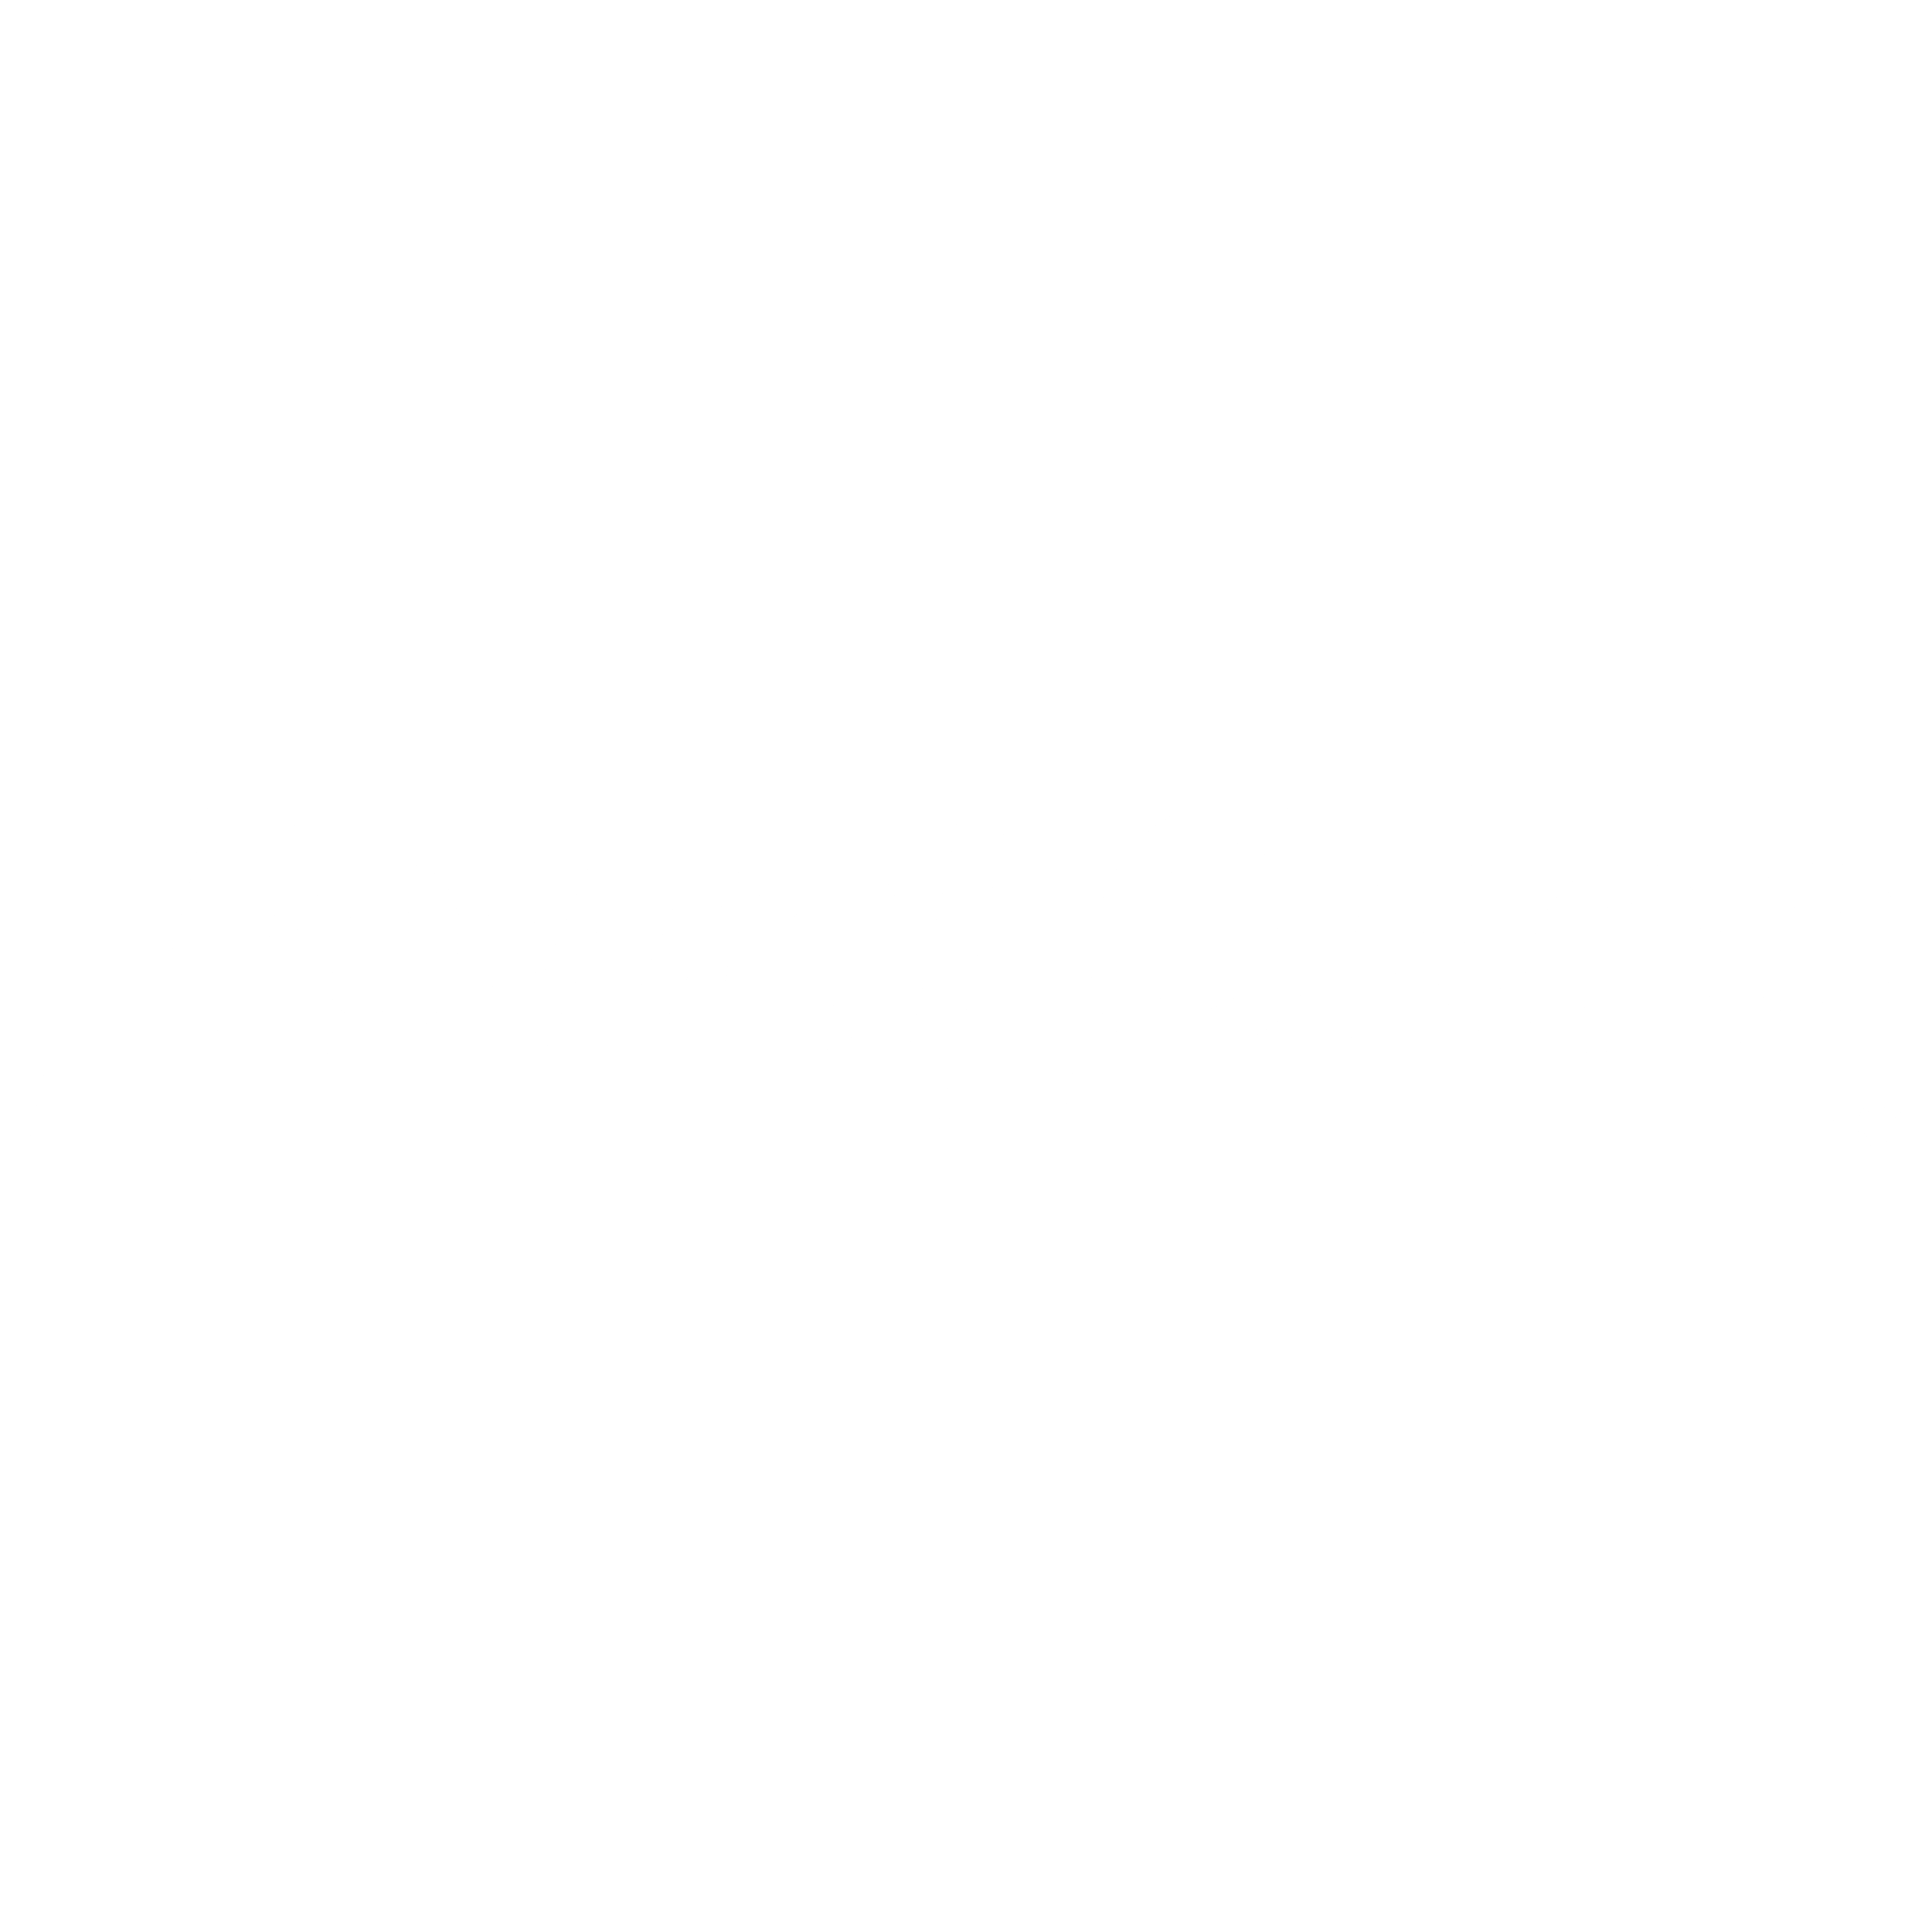 Osco Logo - Jewel Osco Logo PNG Transparent & SVG Vector - Freebie Supply